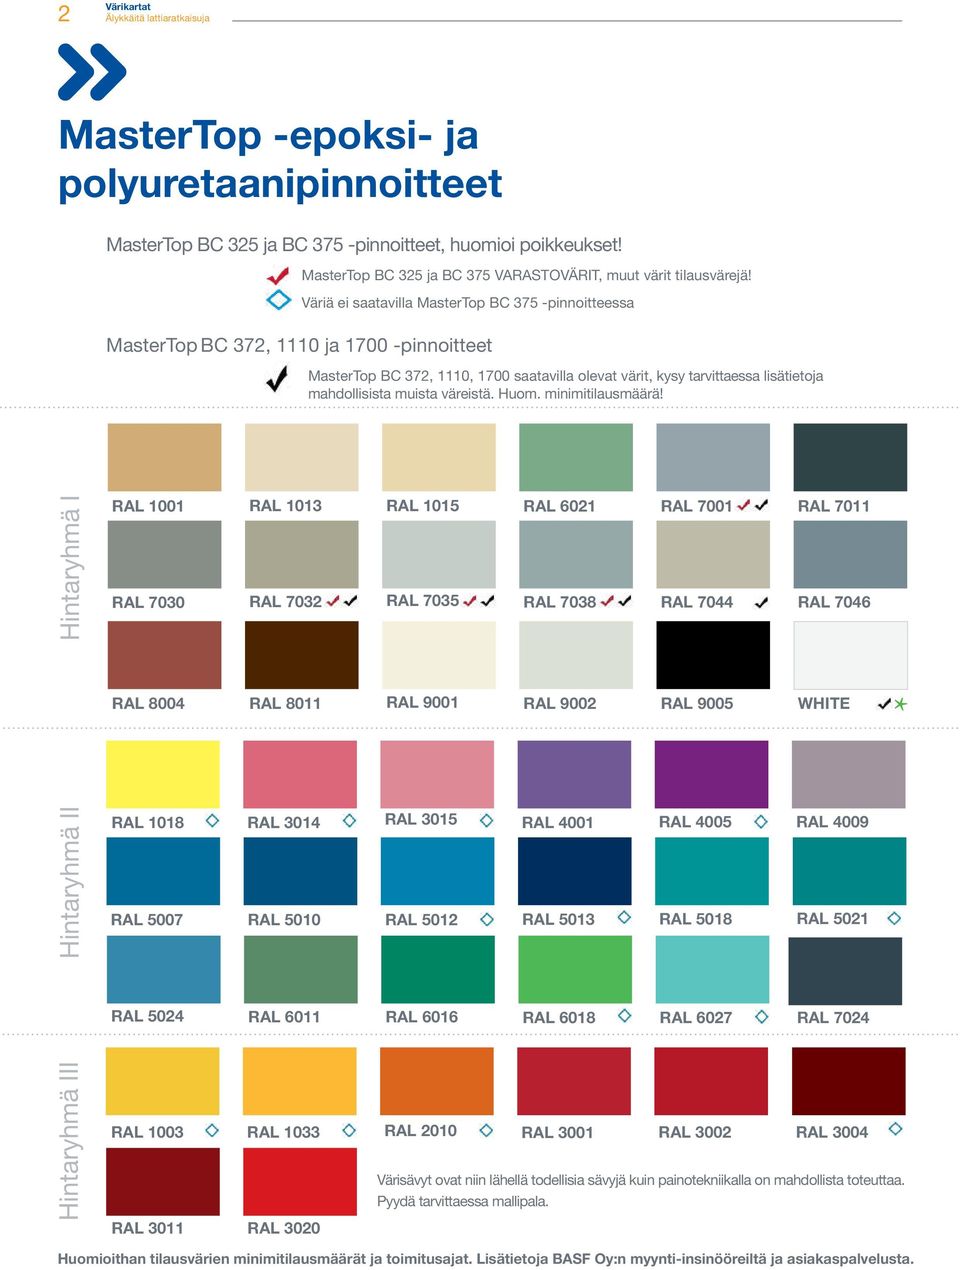 Väriä ei saatavilla MasterTop BC 375 -pinnoitteessa MasterTop BC 372, 1110, 1700 saatavilla olevat värit, kysy tarvittaessa lisätietoja mahdollisista muista väreistä. Huom. minimitilausmäärä!